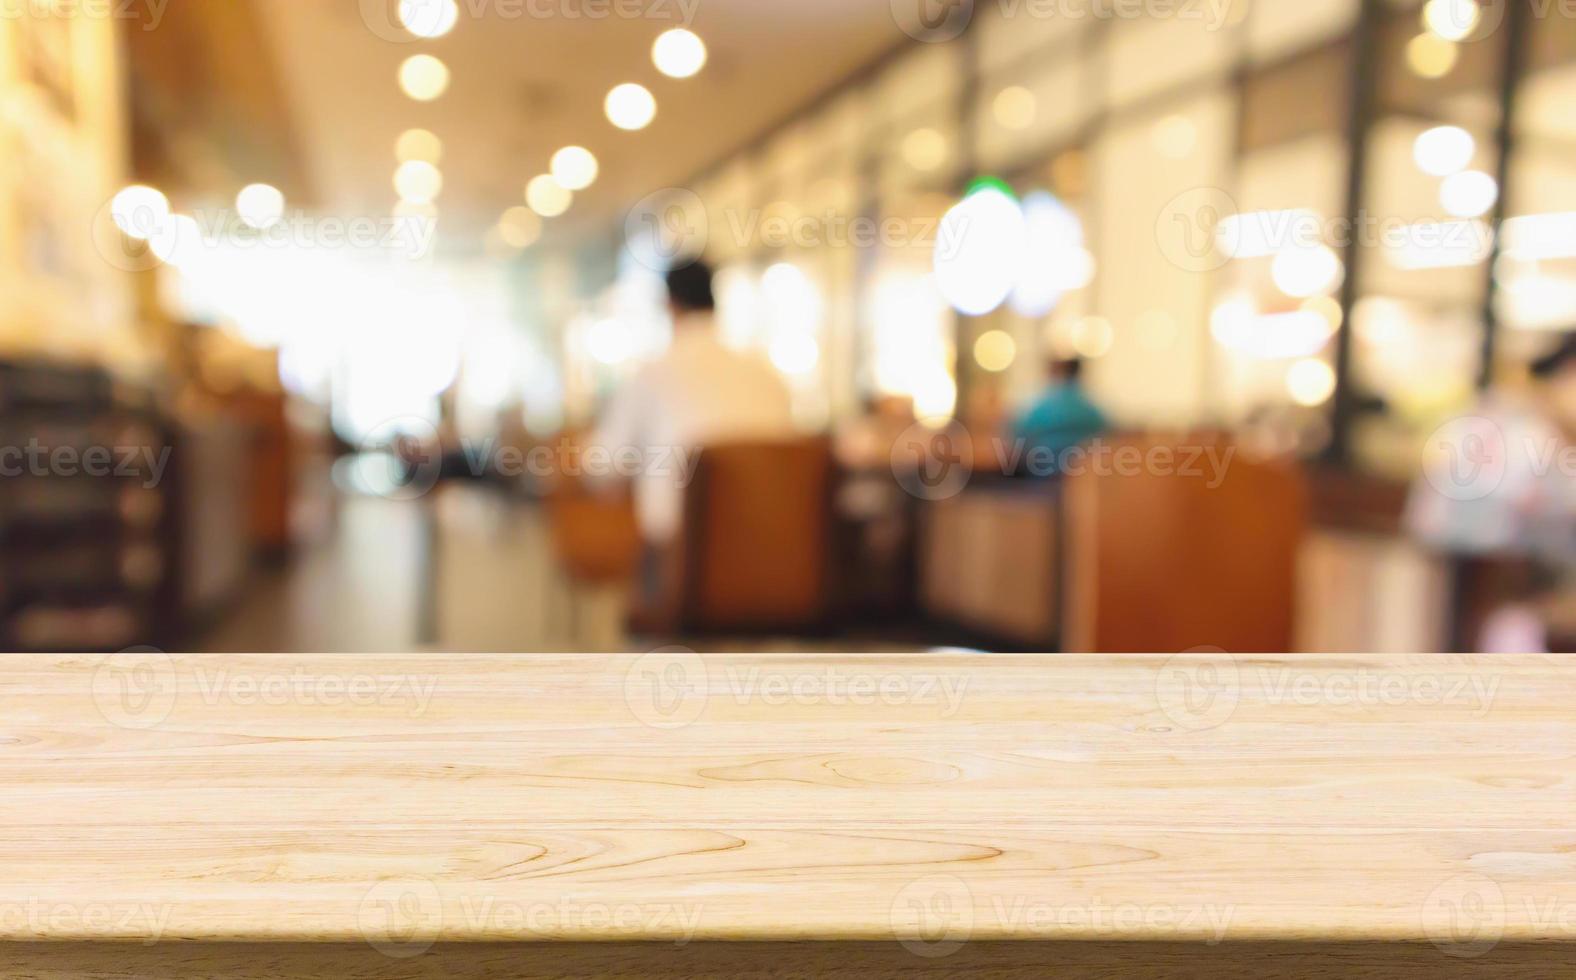 mesa de madeira com restaurante café ou café interior com pessoas abstratas desfocadas desfocar o fundo foto